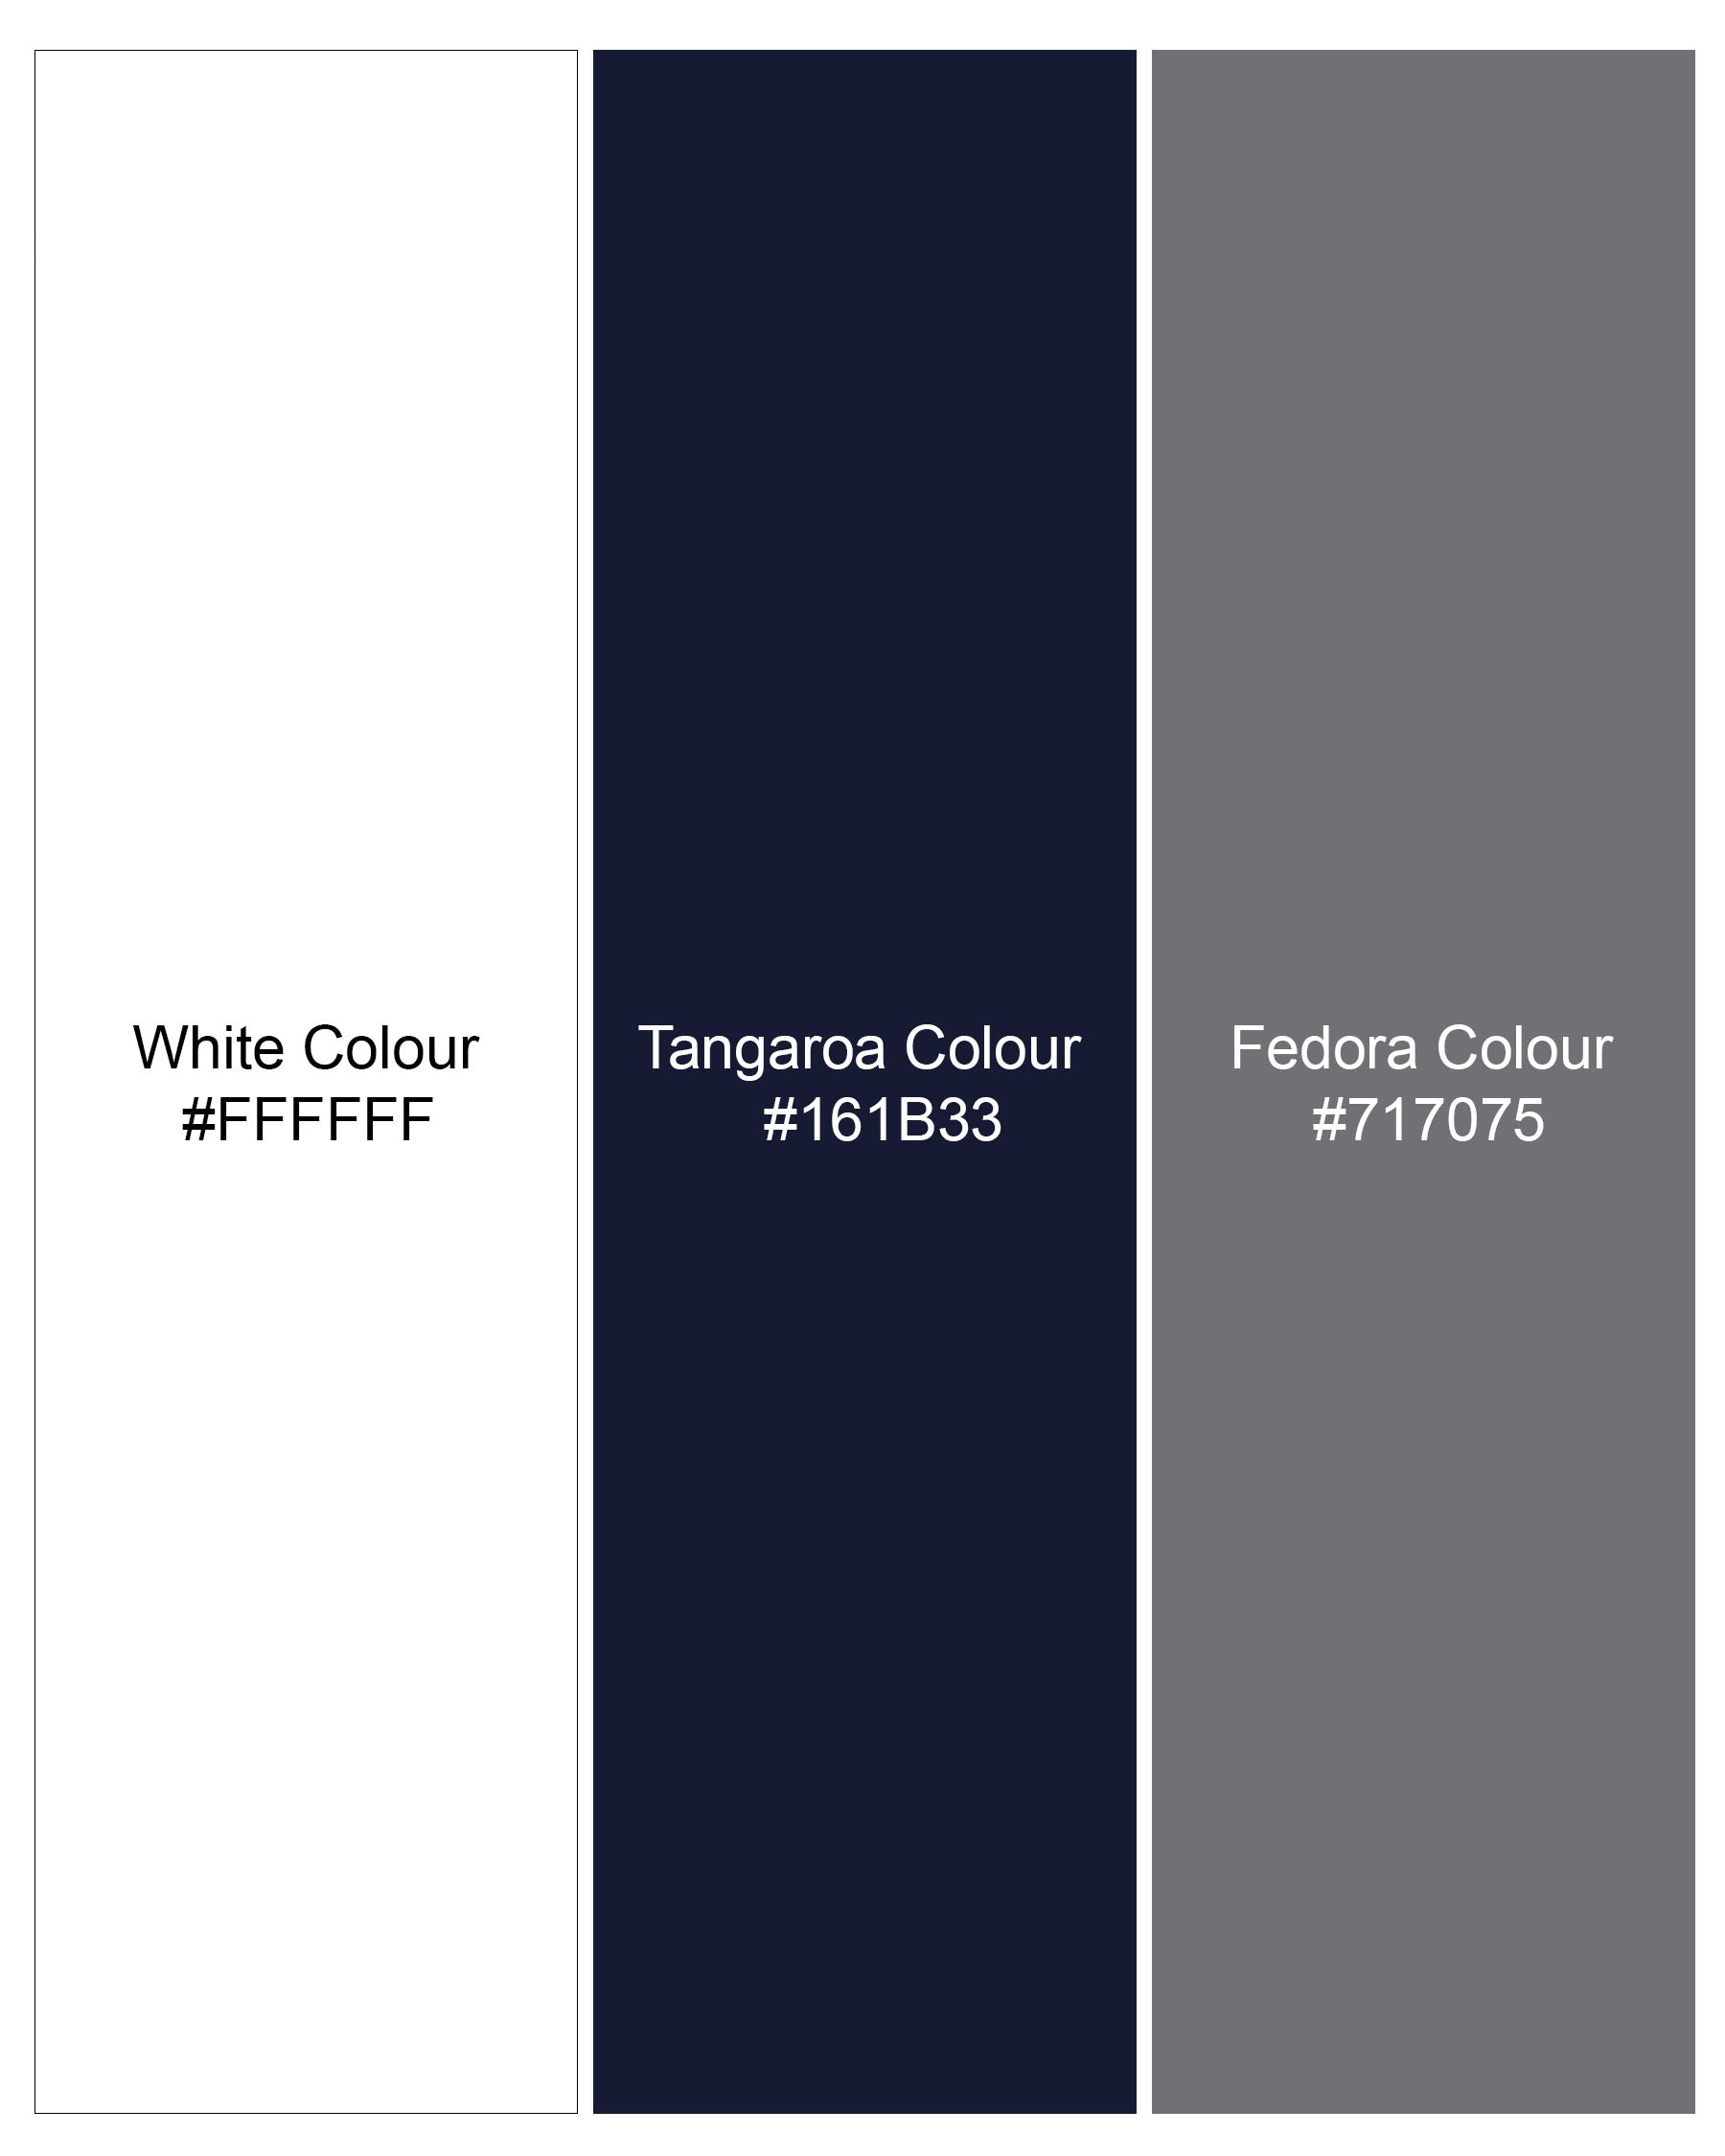 Fedora Gray and Tangaroa Navy Blue Twill Premium Cotton Designer Shirt 7900-P186-38, 7900-P186-H-38, 7900-P186-39, 7900-P186-H-39, 7900-P186-40, 7900-P186-H-40, 7900-P186-42, 7900-P186-H-42, 7900-P186-44, 7900-P186-H-44, 7900-P186-46, 7900-P186-H-46, 7900-P186-48, 7900-P186-H-48, 7900-P186-50, 7900-P186-H-50, 7900-P186-52, 7900-P186-H-52